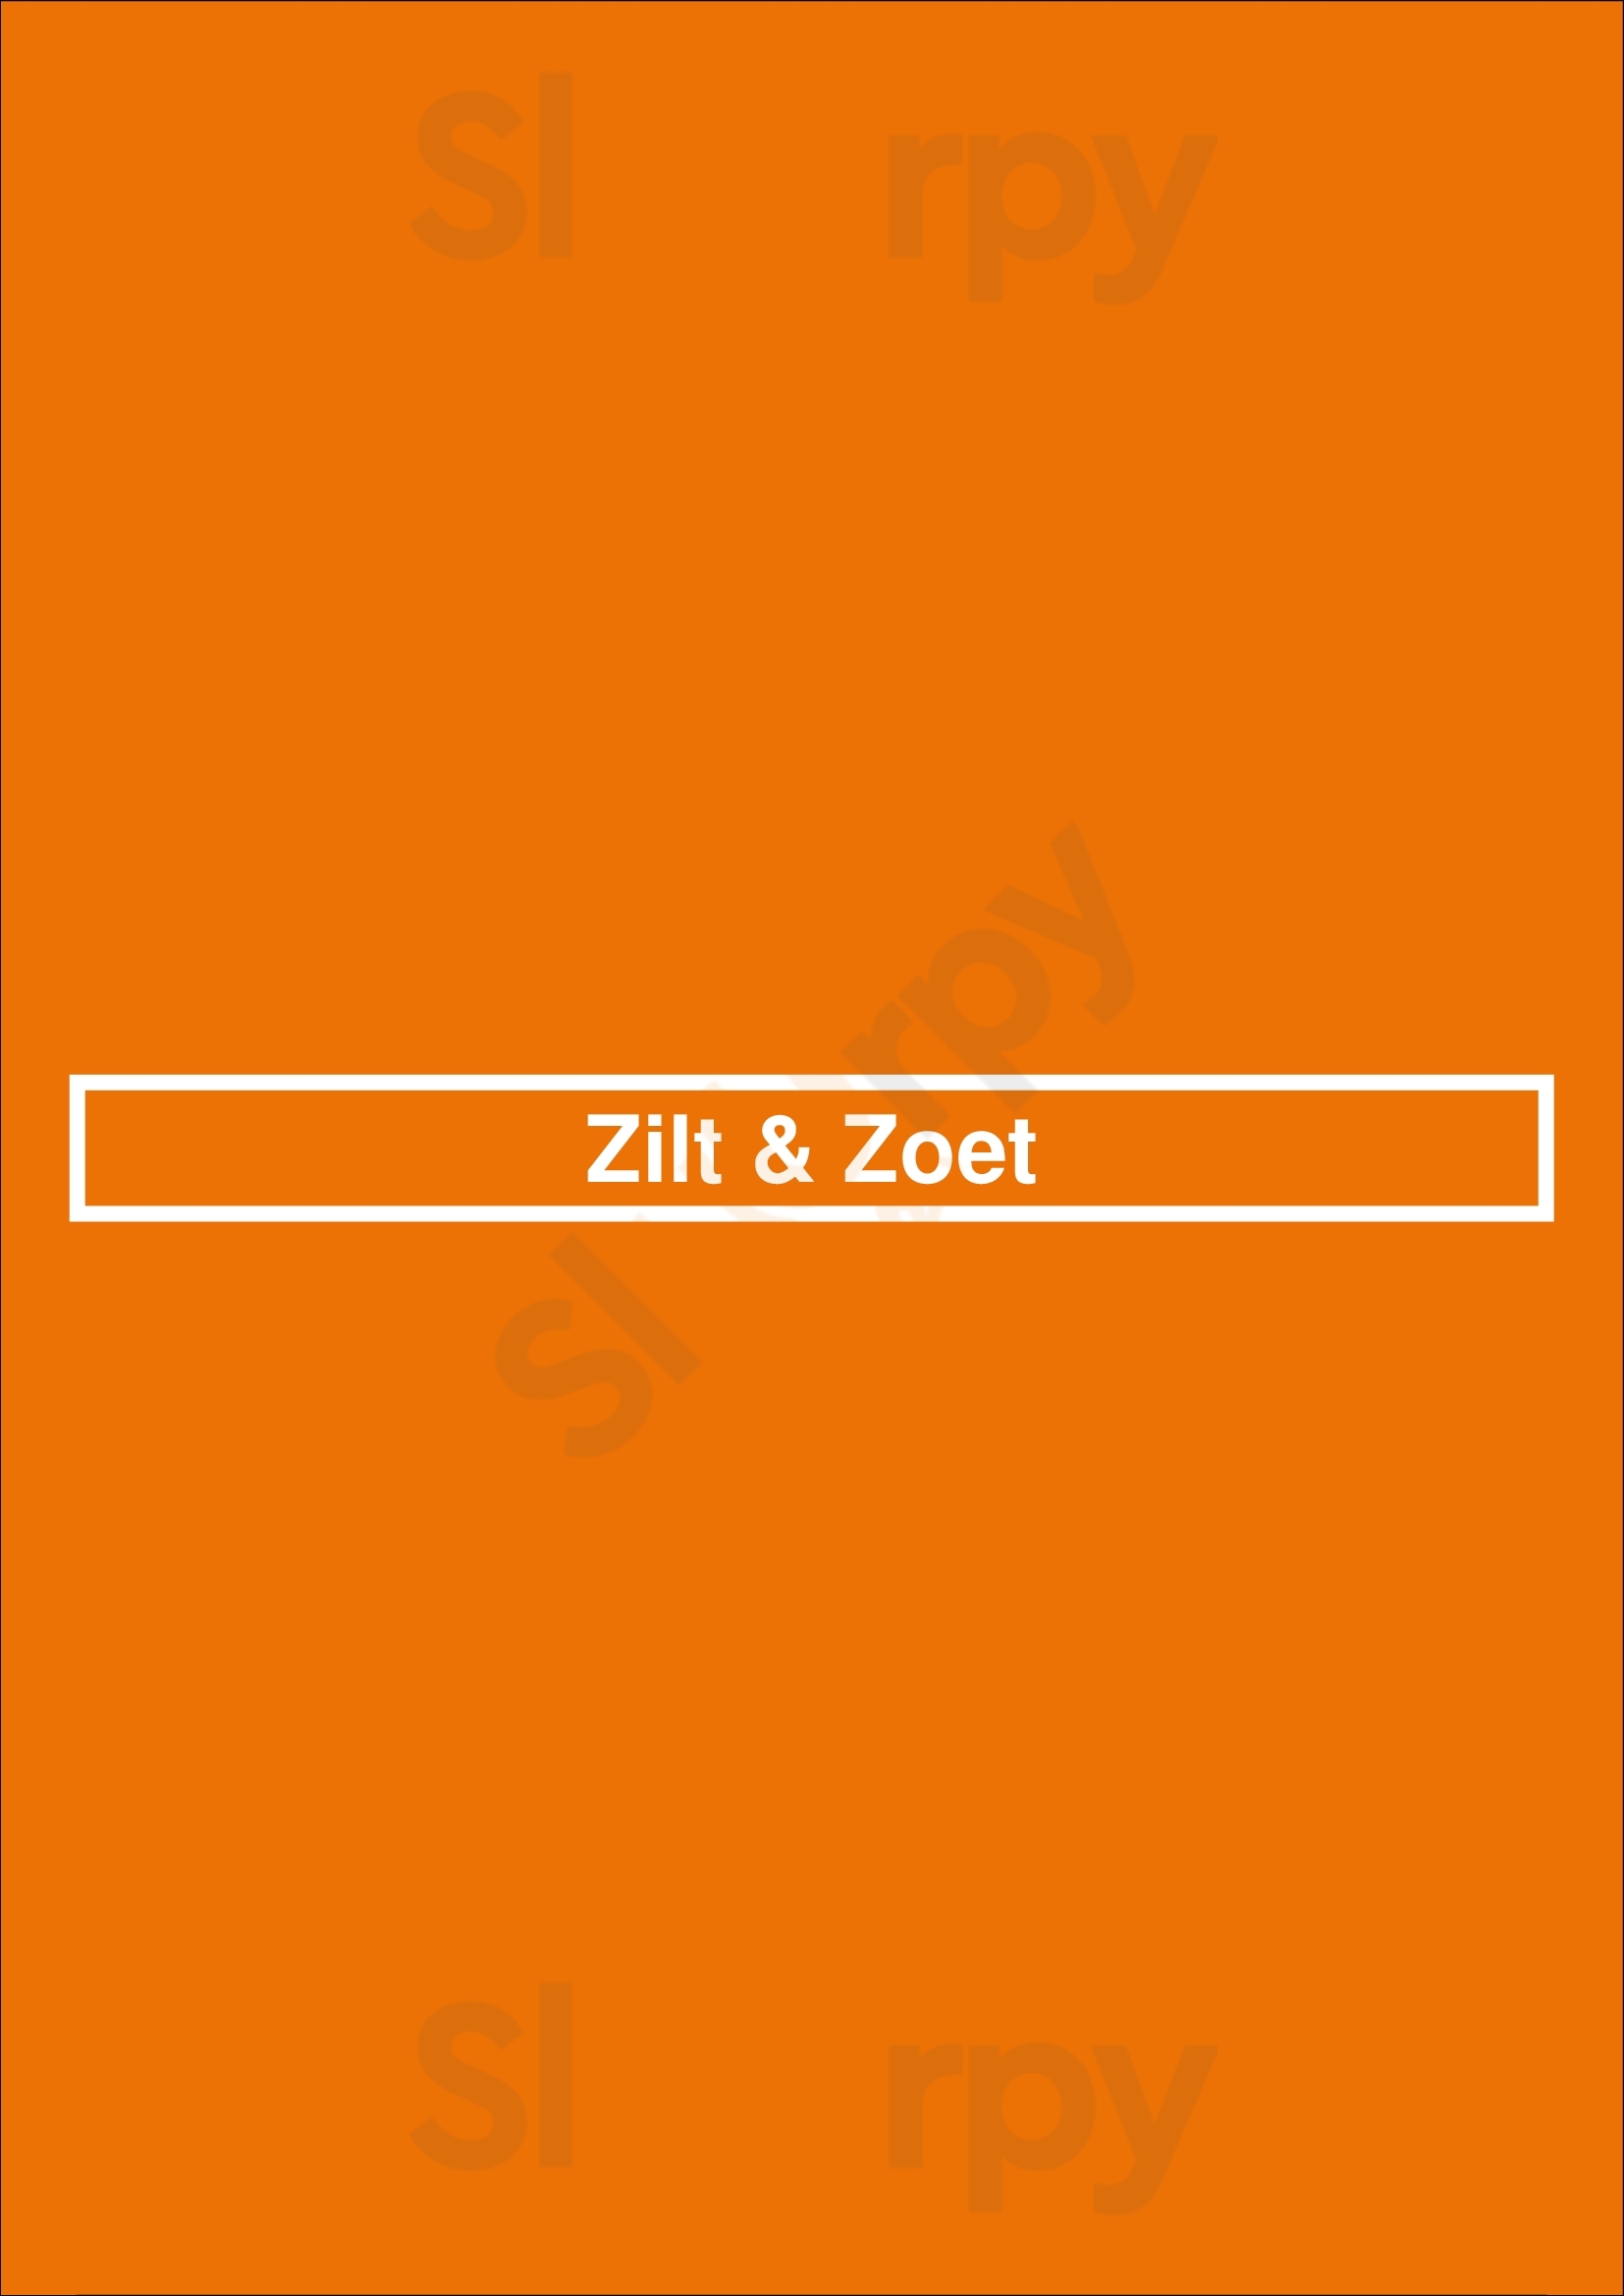 Zilt & Zoet Maartensdijk Menu - 1